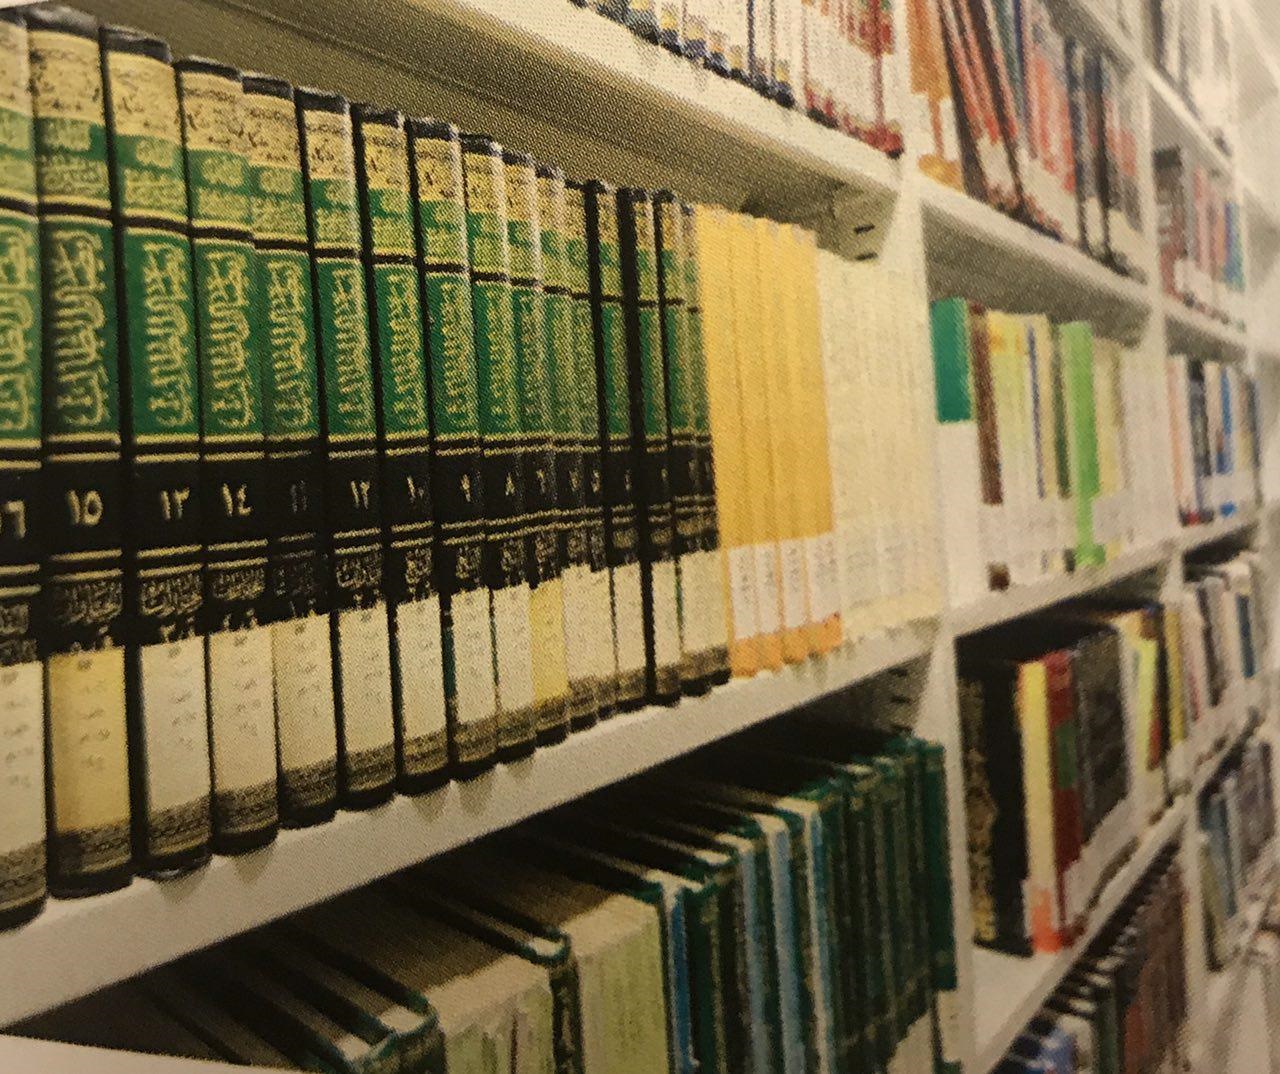 بیستمین سال تاسیس کتابخانه تخصصى فقه واصول در قم